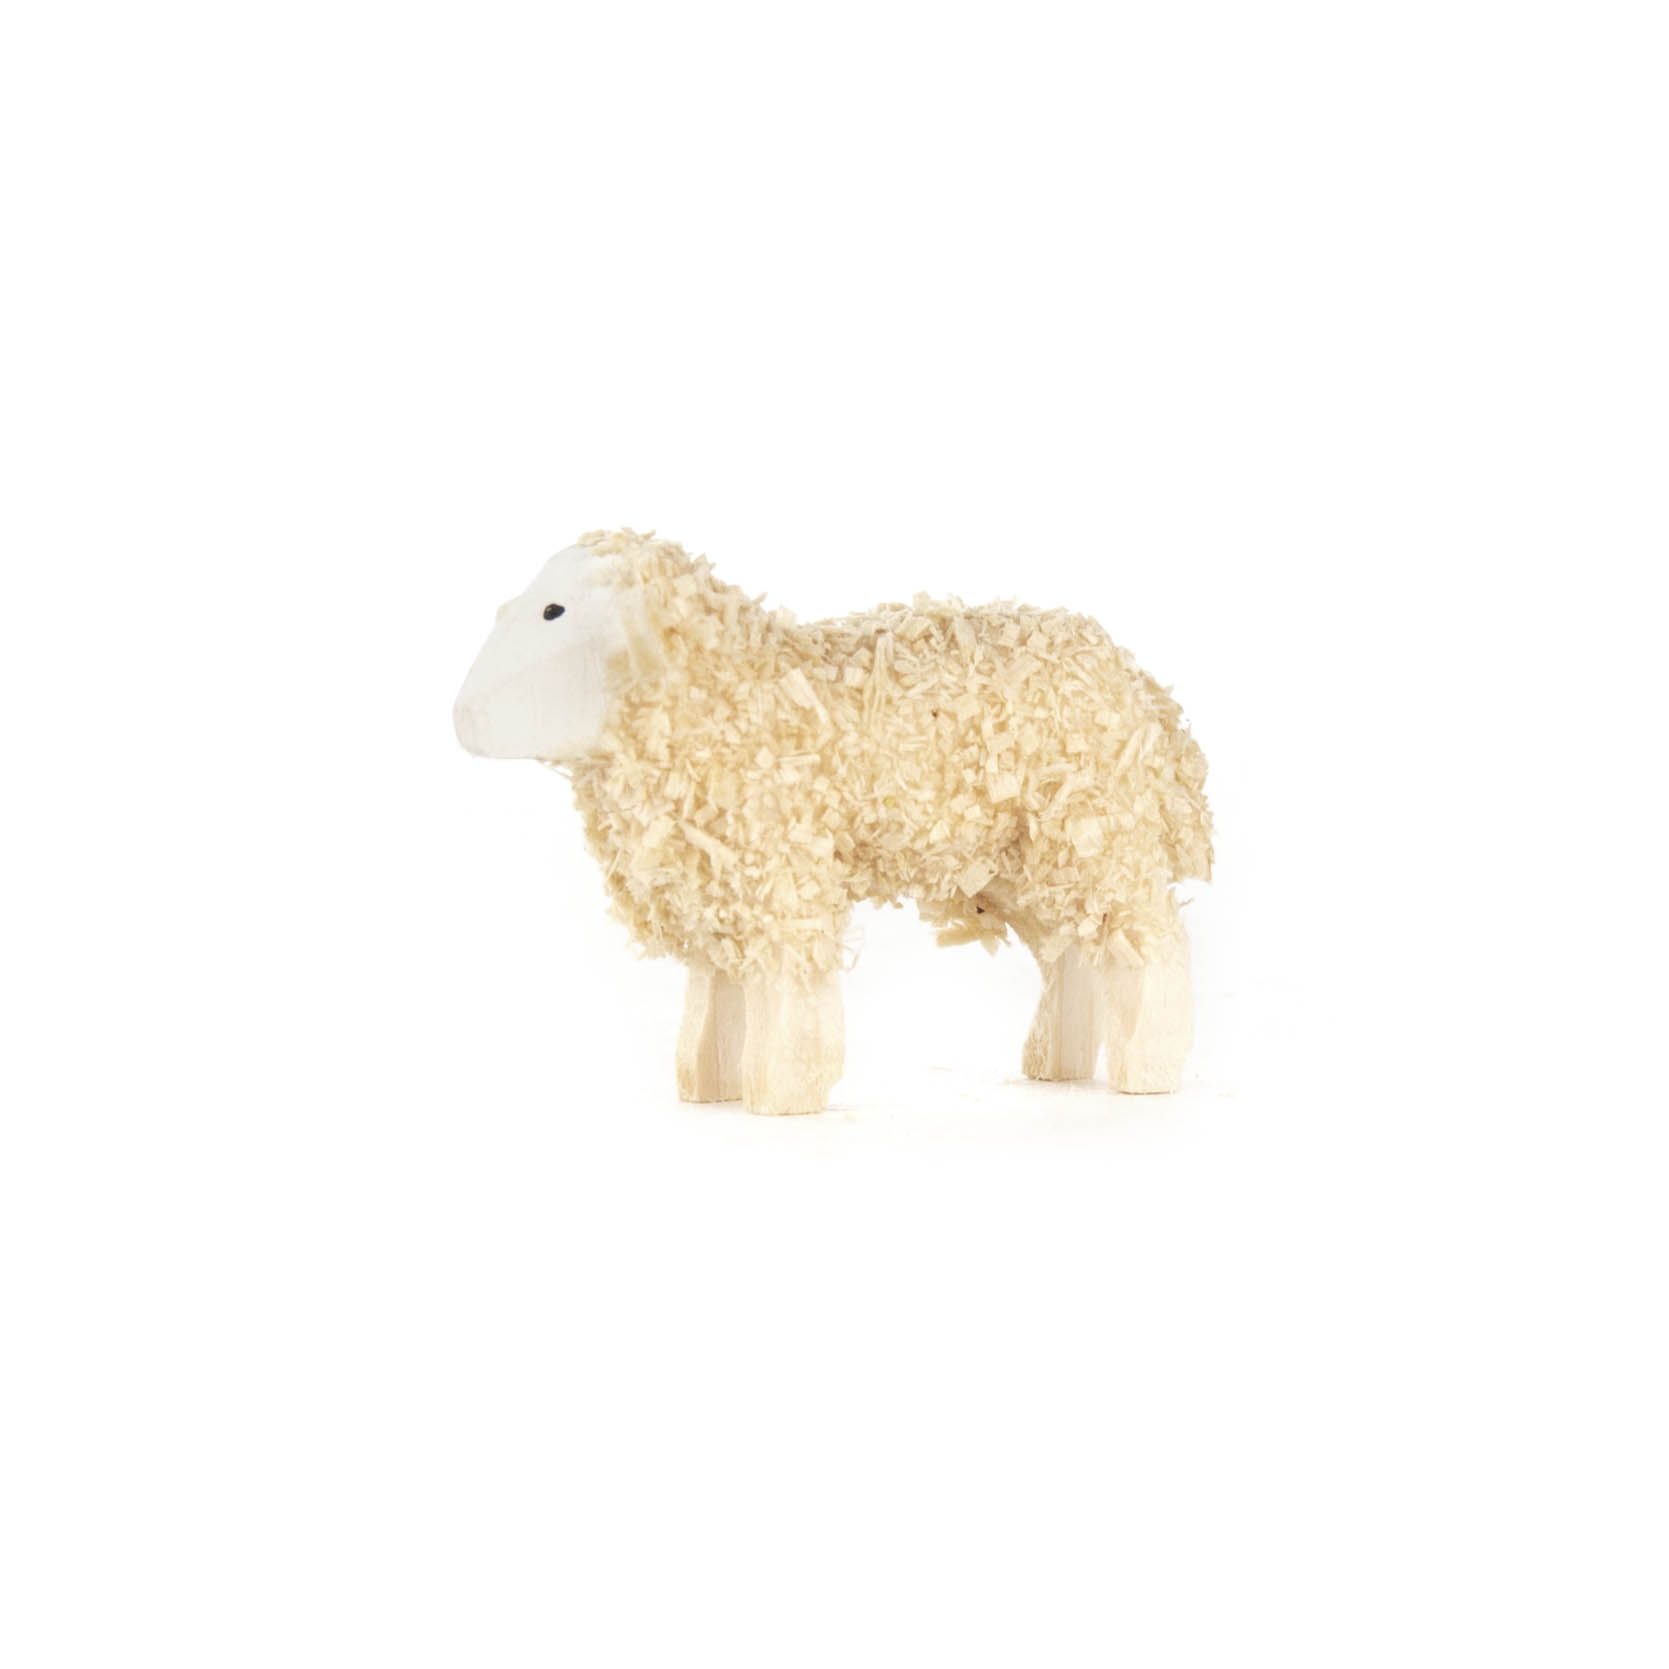 Schaf klein im Dregeno Online Shop günstig kaufen